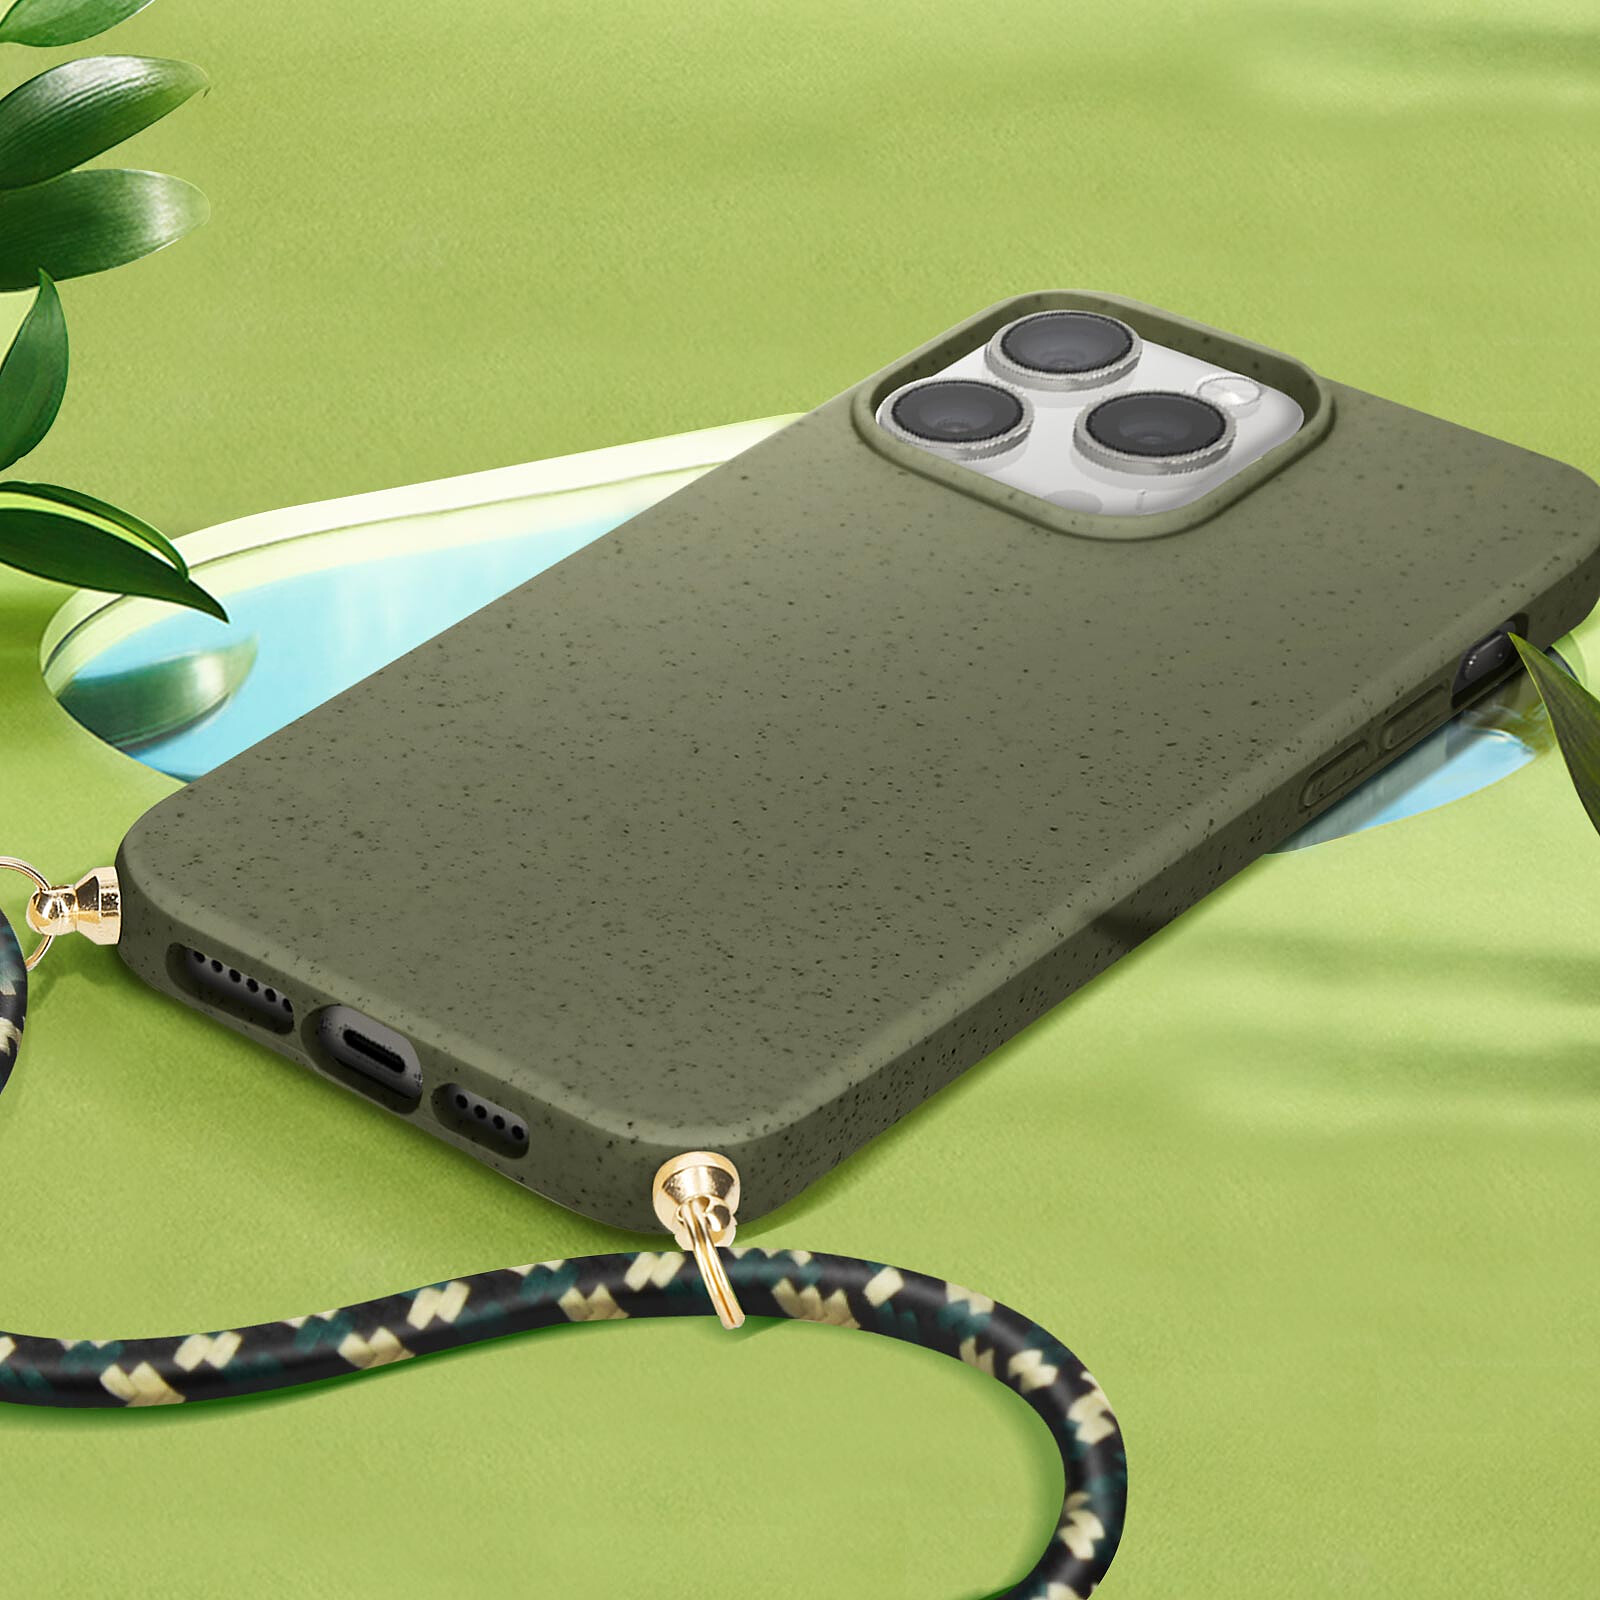 Avizar Coque Cordon pour iPhone 11 Pro Max avec Porte-cartes Support Vidéo  Lanière violet foncé - Coque téléphone - LDLC